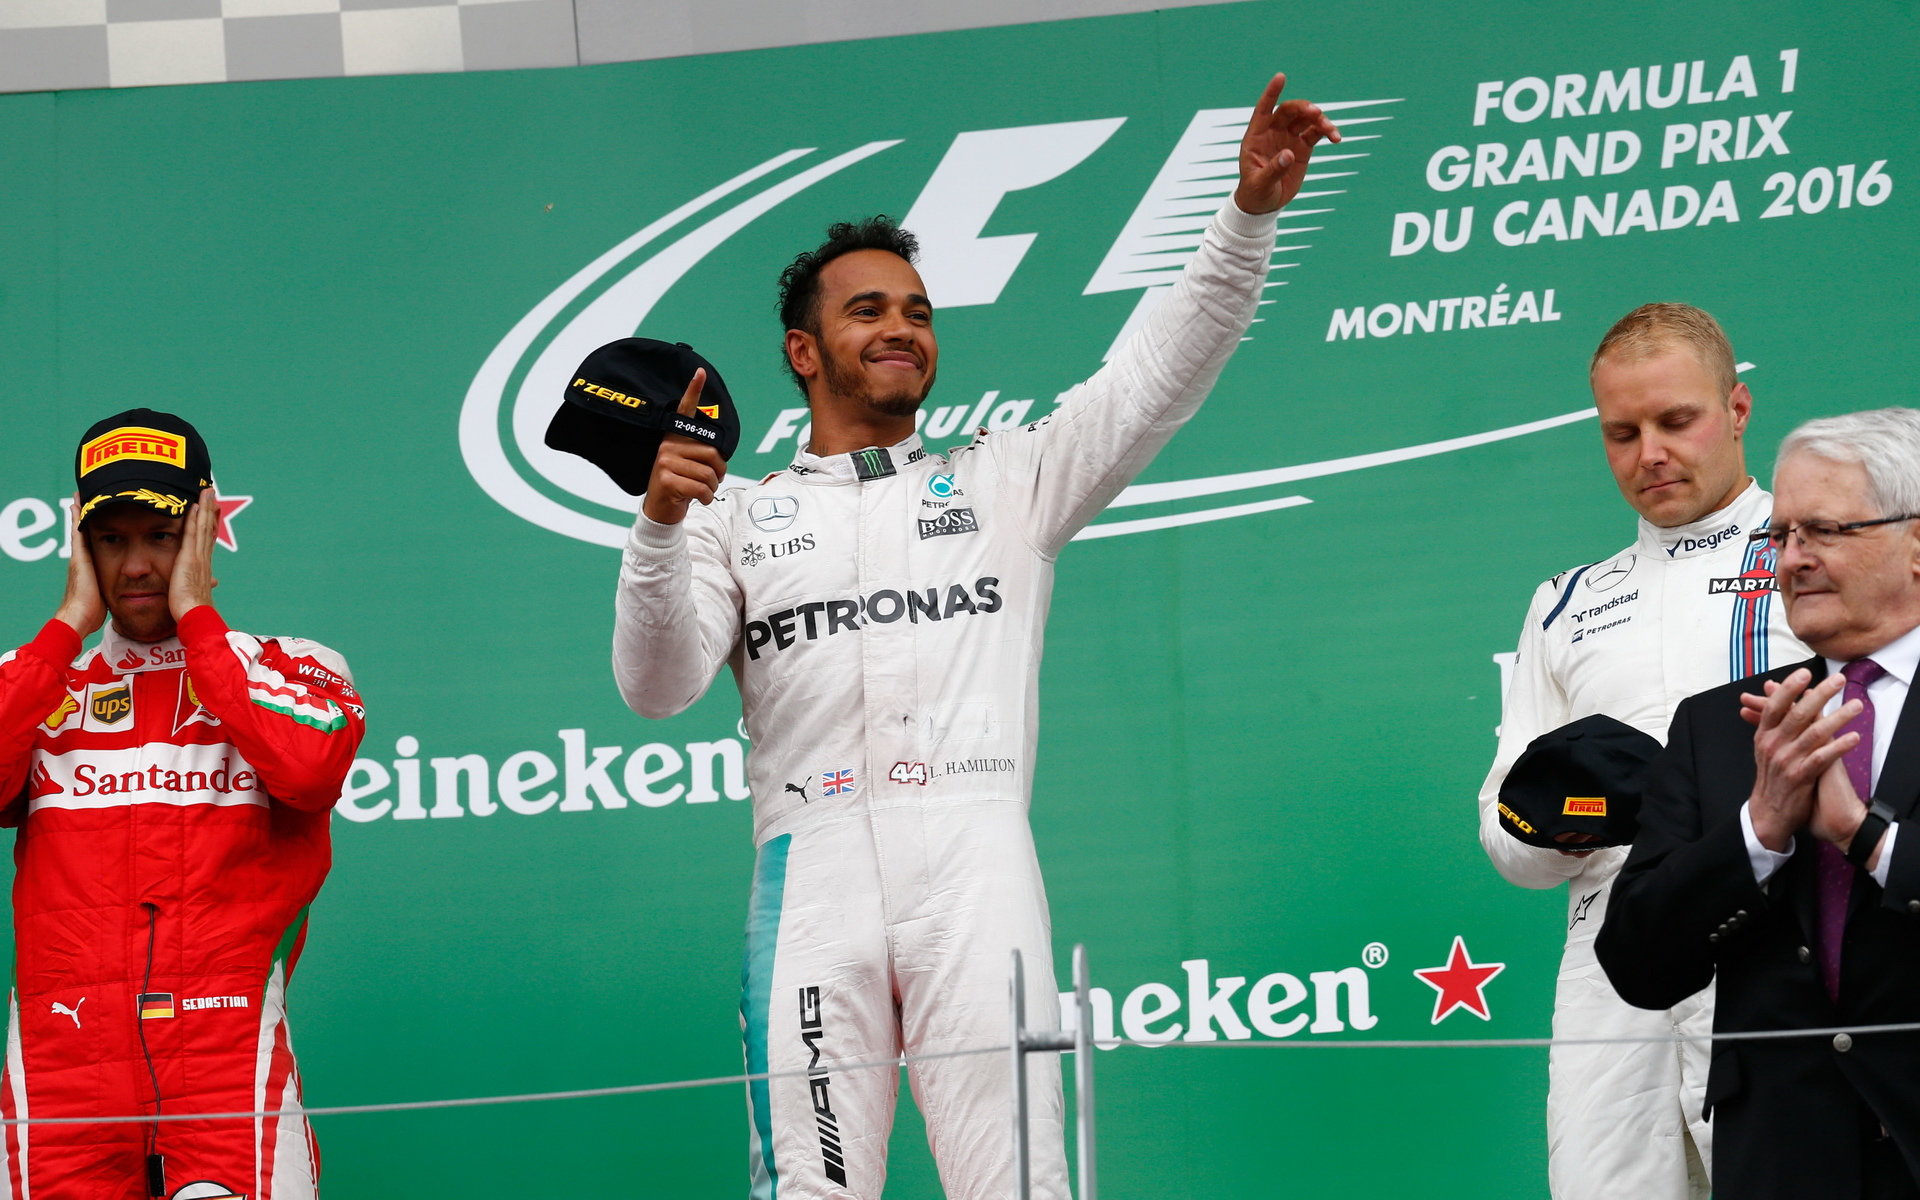 Přes problematický start Lewis Hamilton nakonec závod v Kanadě vyhrál